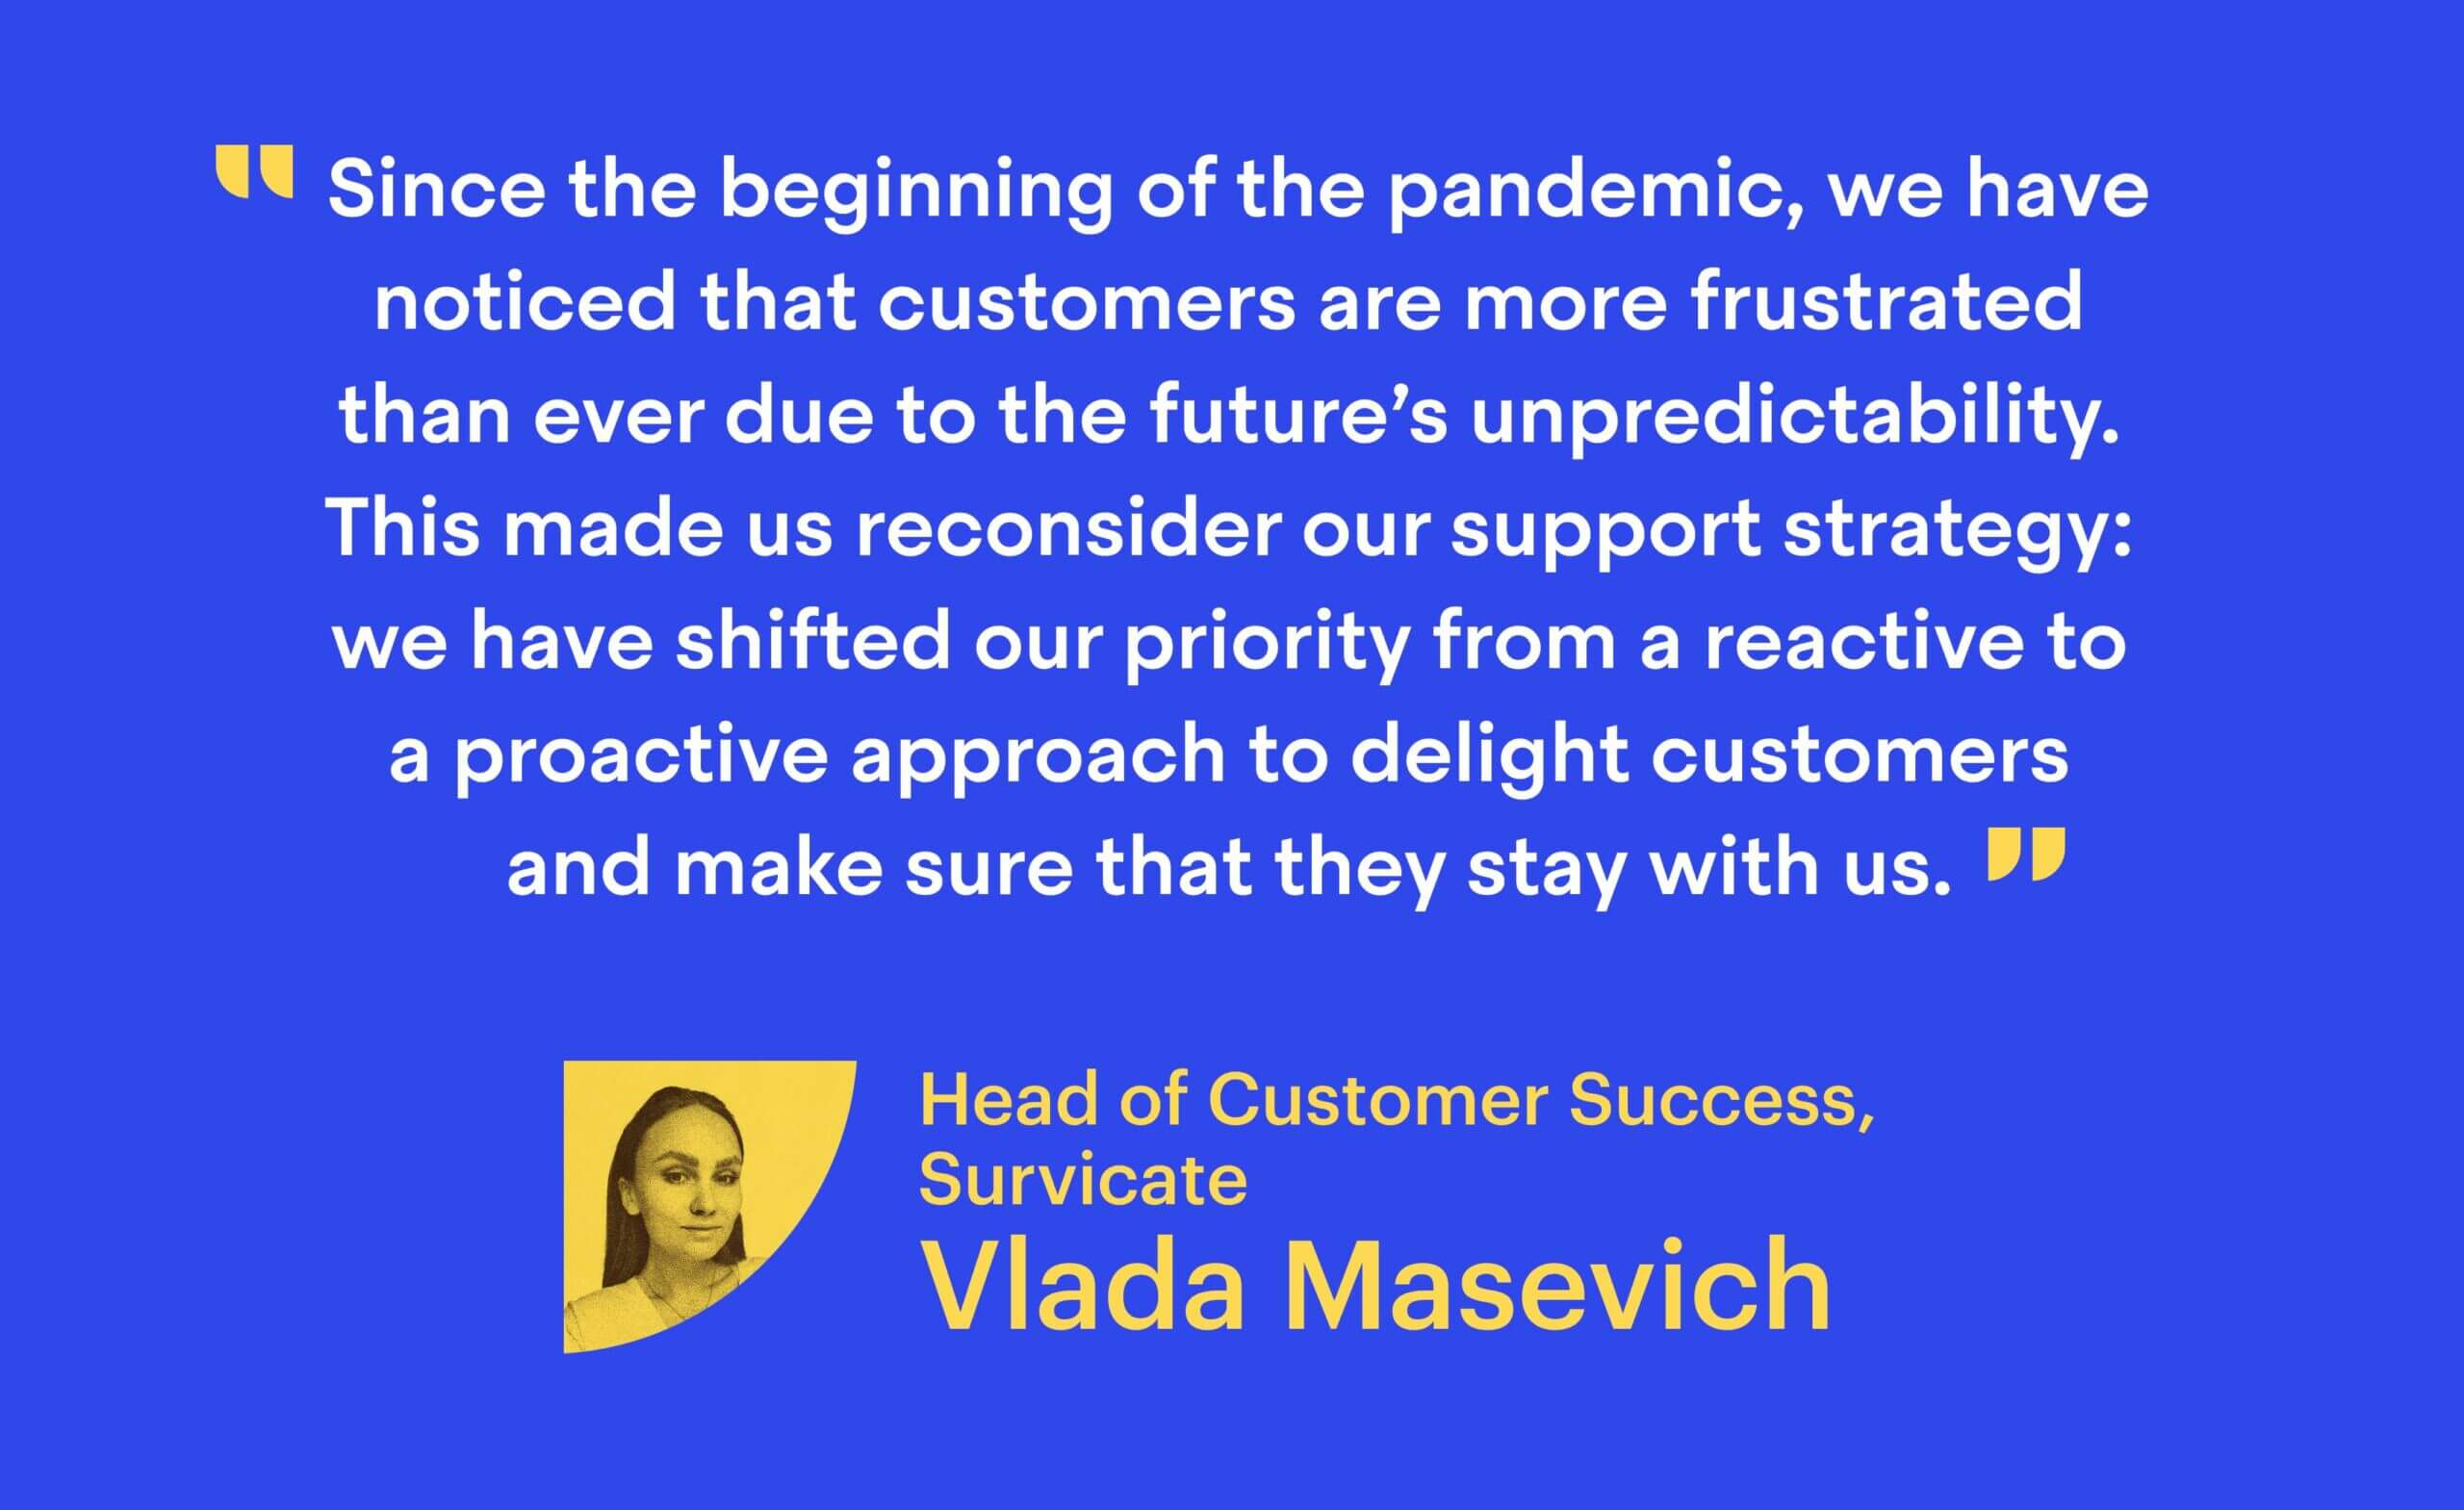 Vlada Masevich, Head of Customer Success at Survicate